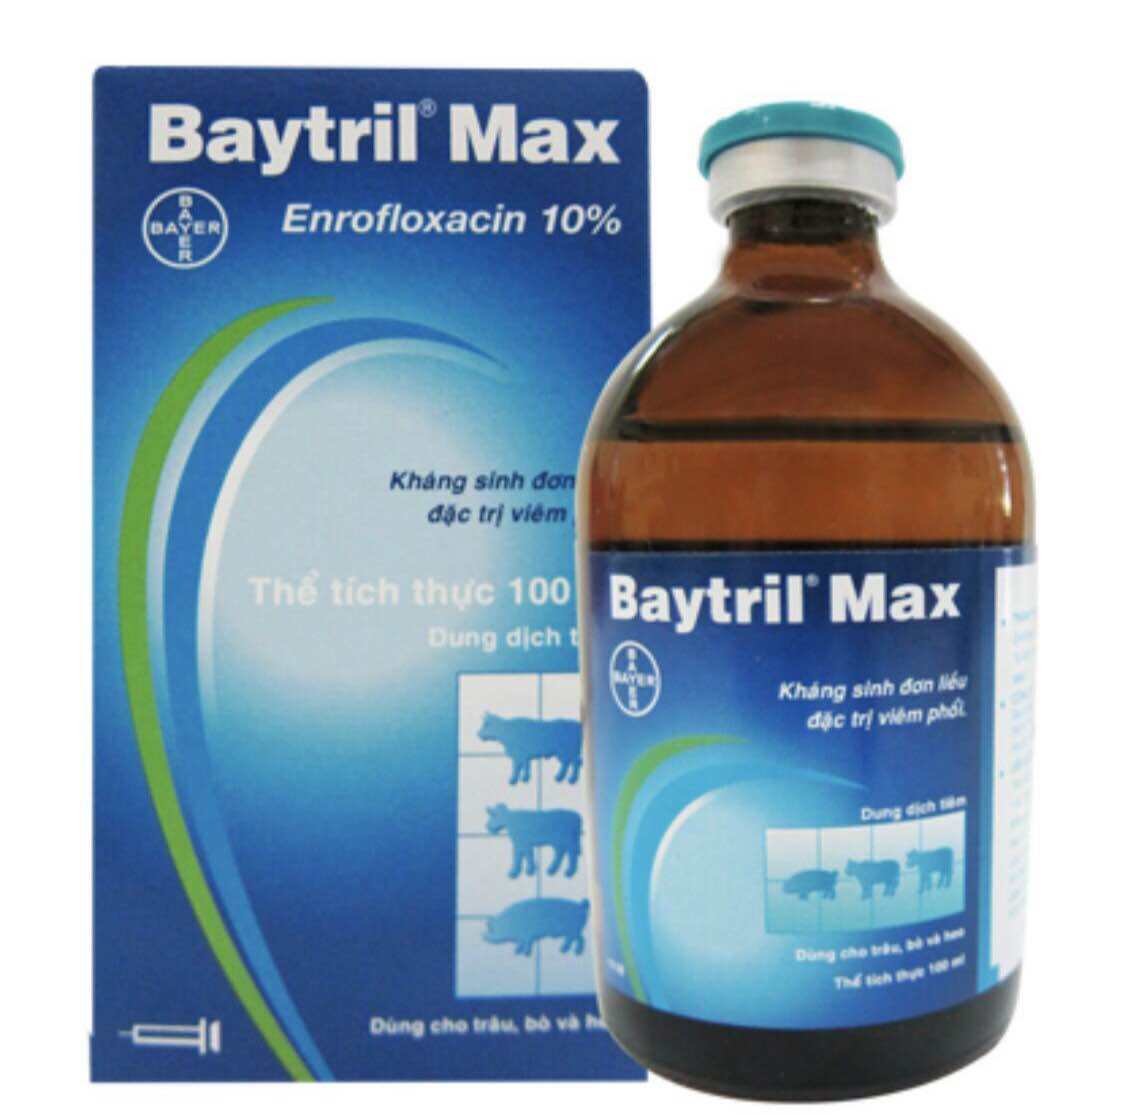 Baytril Max 10% chiếc lẻ 10ml đặt trị viêm phổi, tiêu chảy kéo dài dùng cho gia súc và gia cầm.